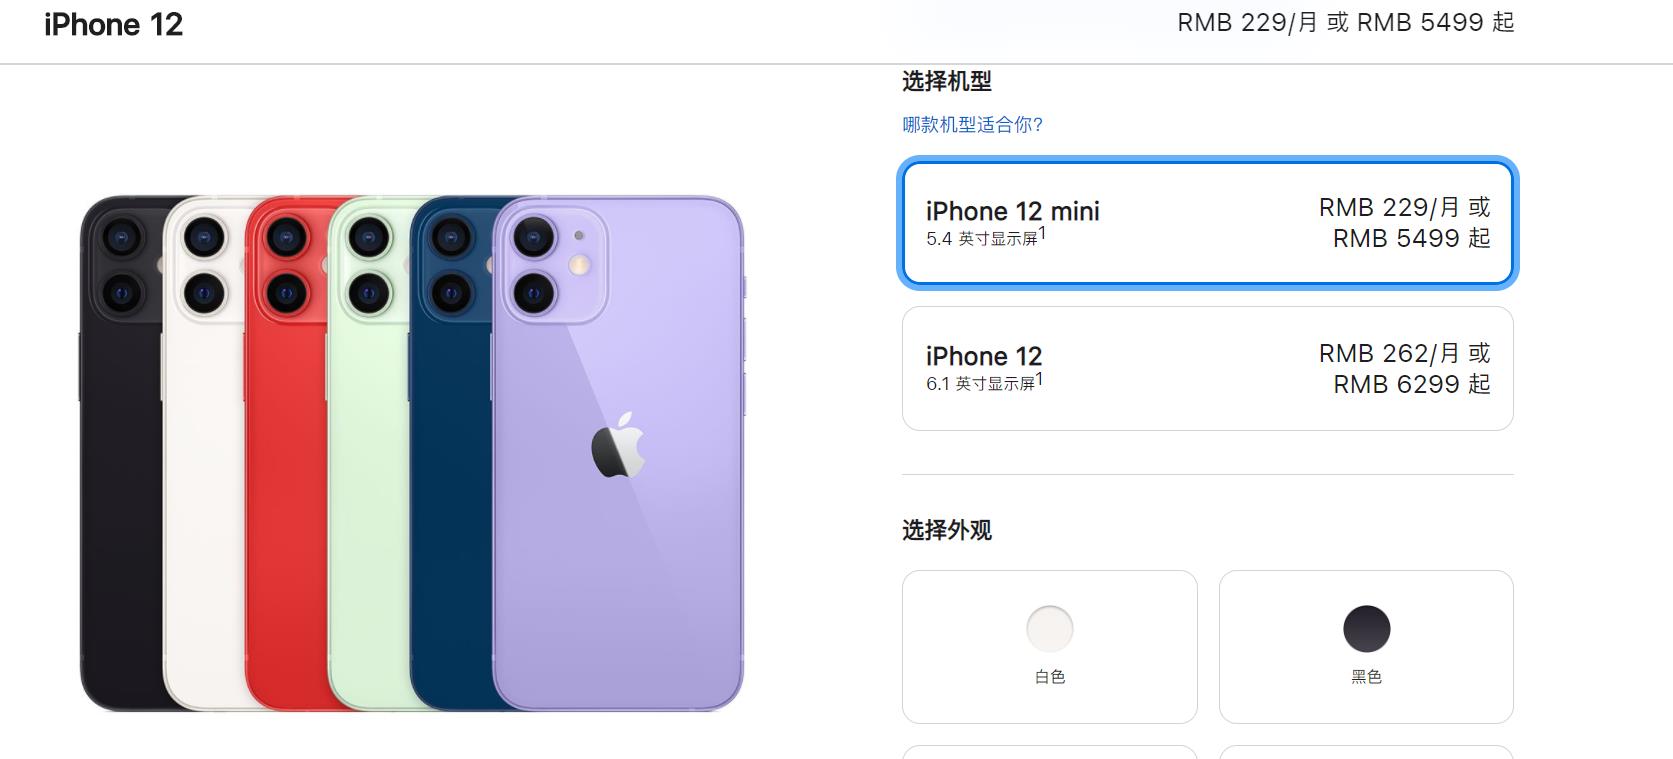 销量差强人意，消息称苹果已提前停产iPhone12 mini休闲区蓝鸢梦想 - Www.slyday.coM